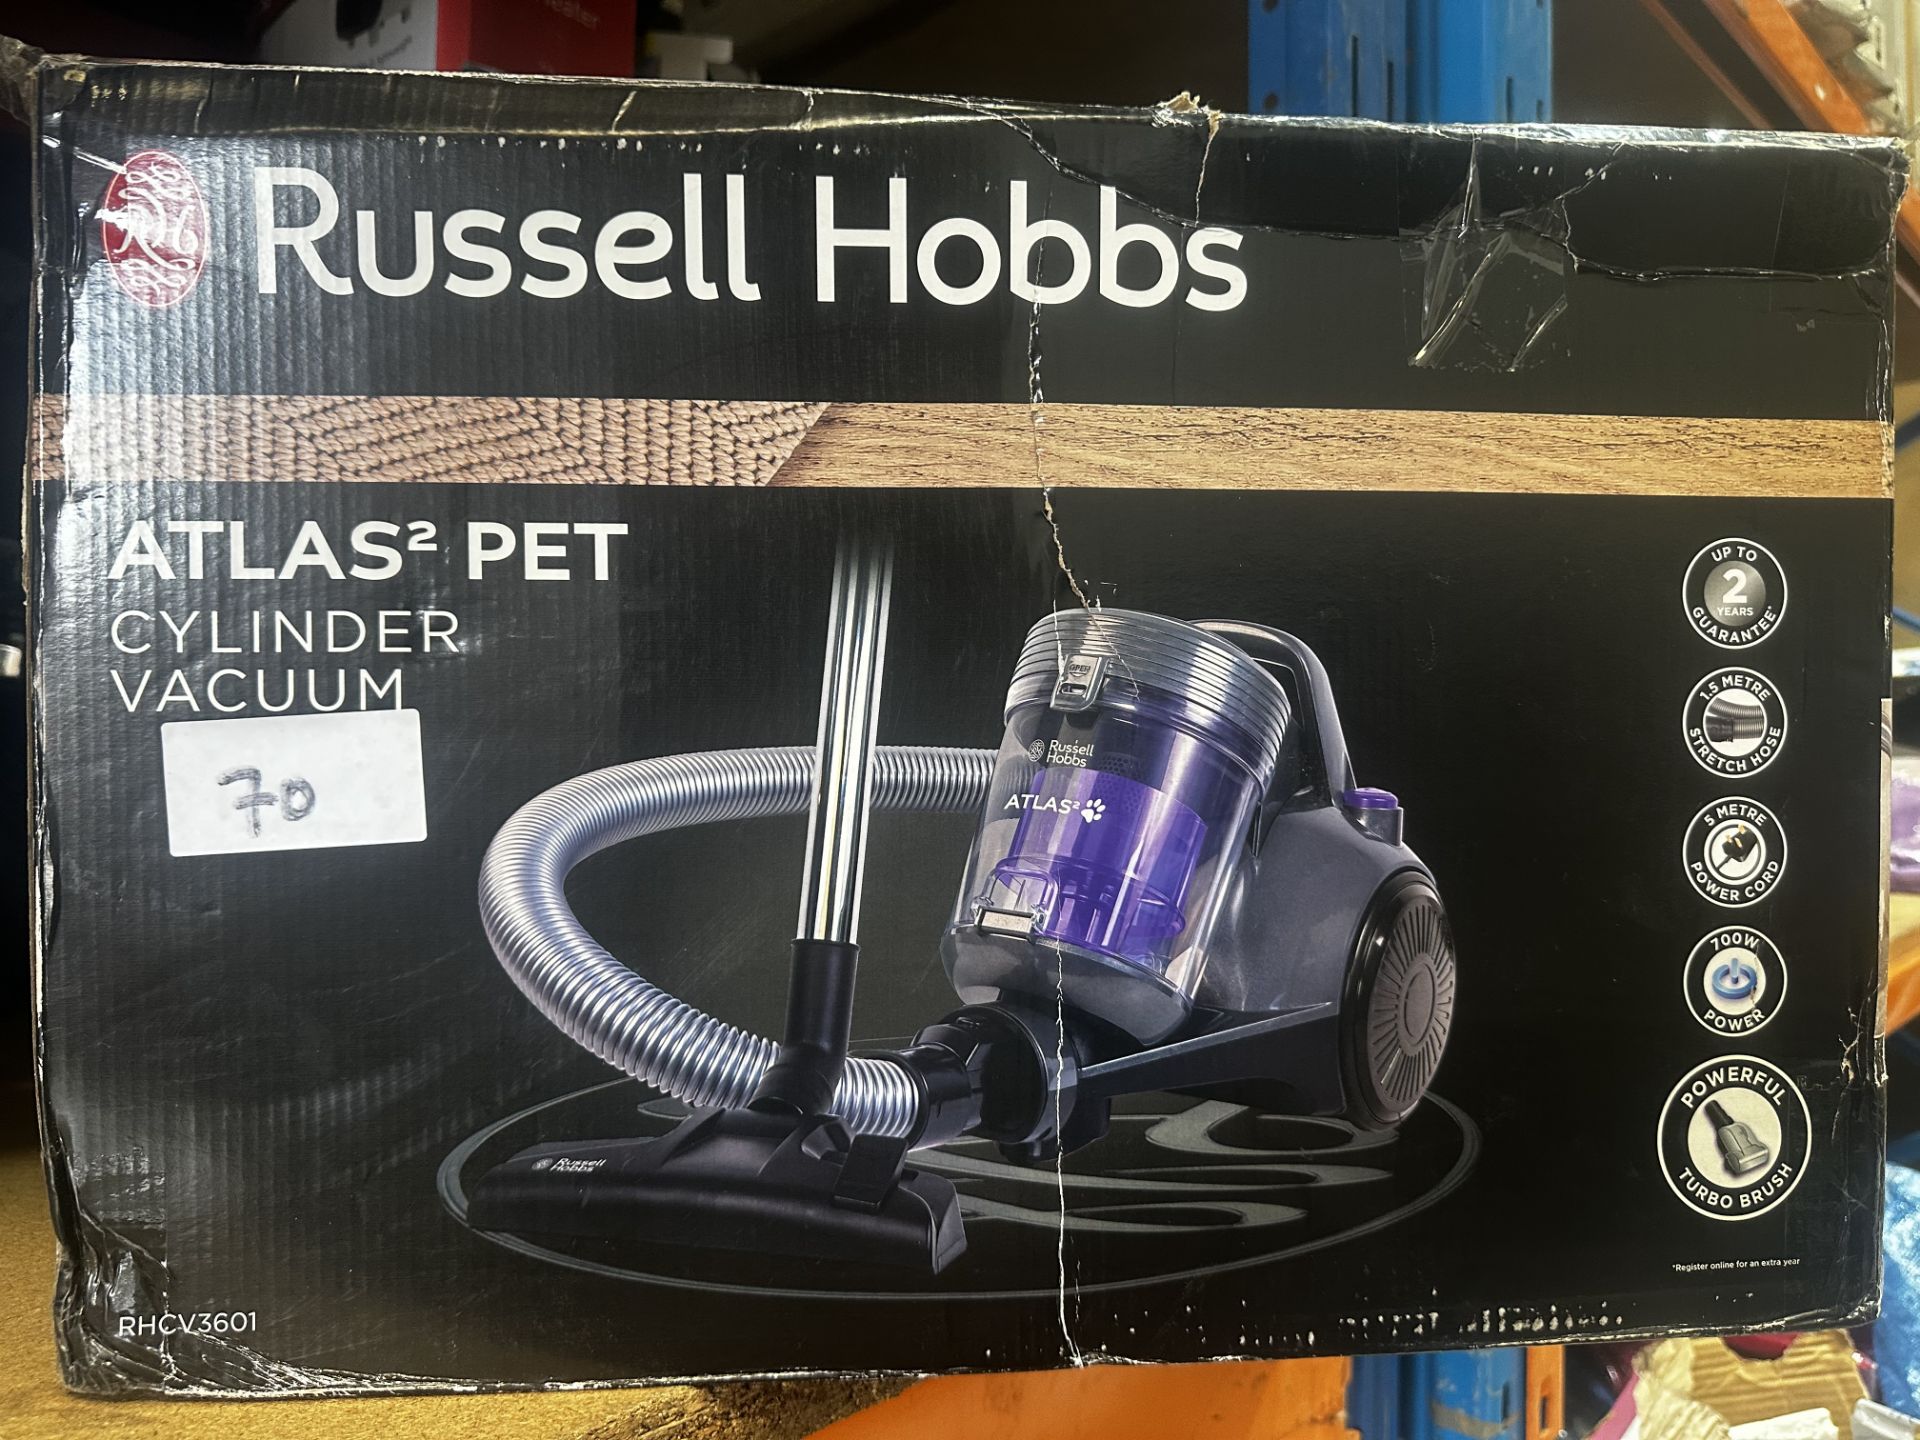 Russell Hobbs Atlas2 Cylinder Vacuum. RRP £50 - Grade U